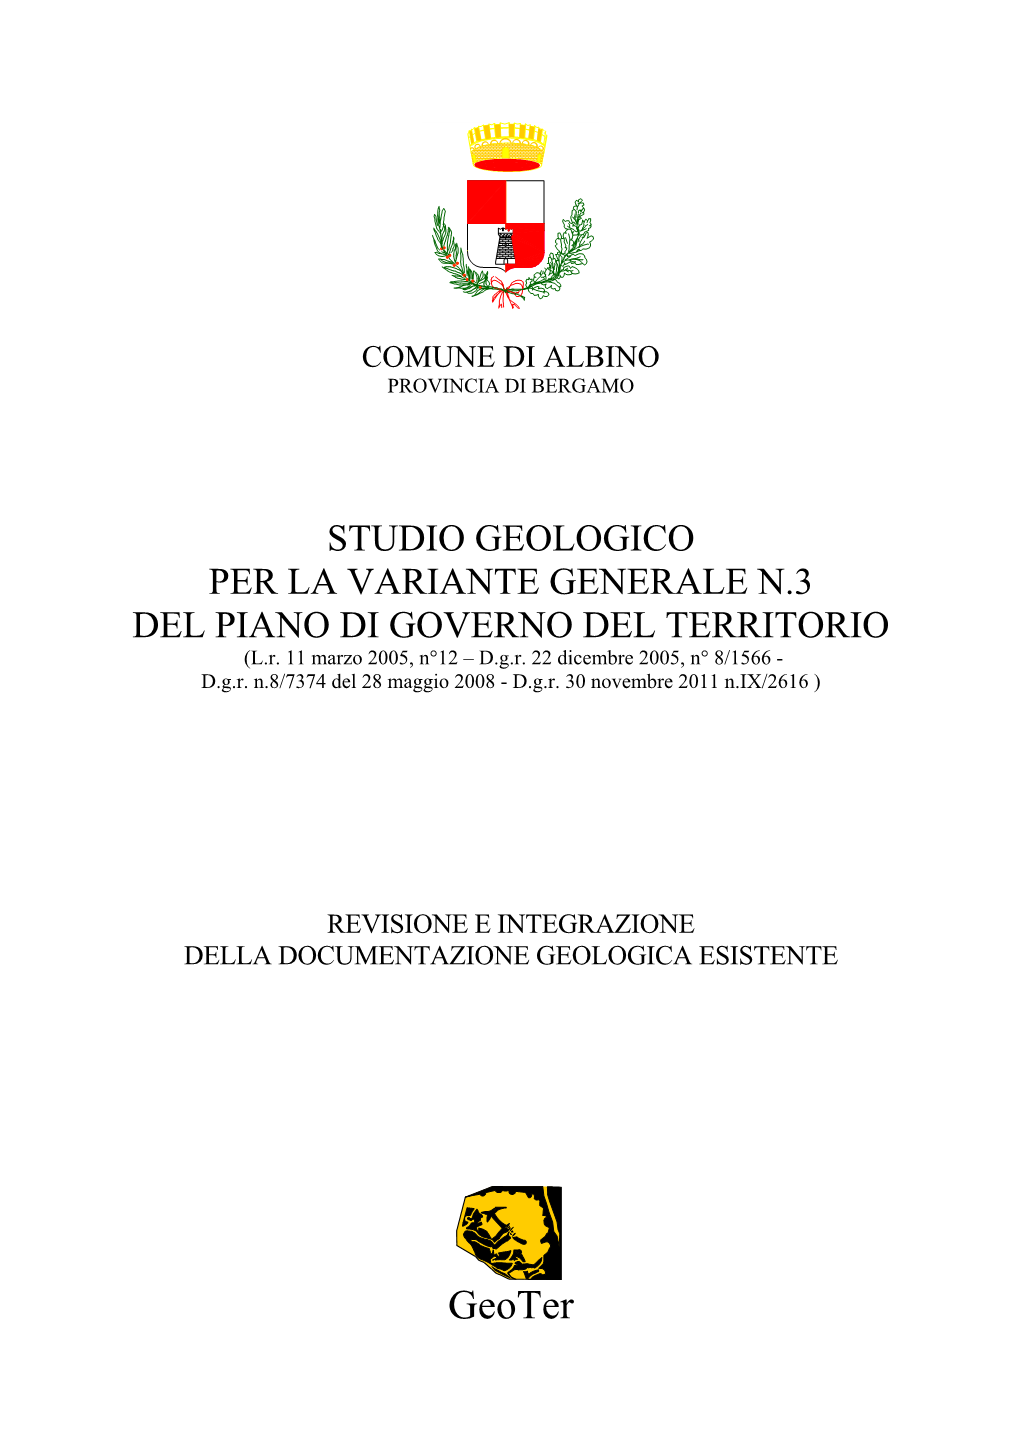 STUDIO GEOLOGICO PER LA VARIANTE GENERALE N.3 DEL PIANO DI GOVERNO DEL TERRITORIO (L.R